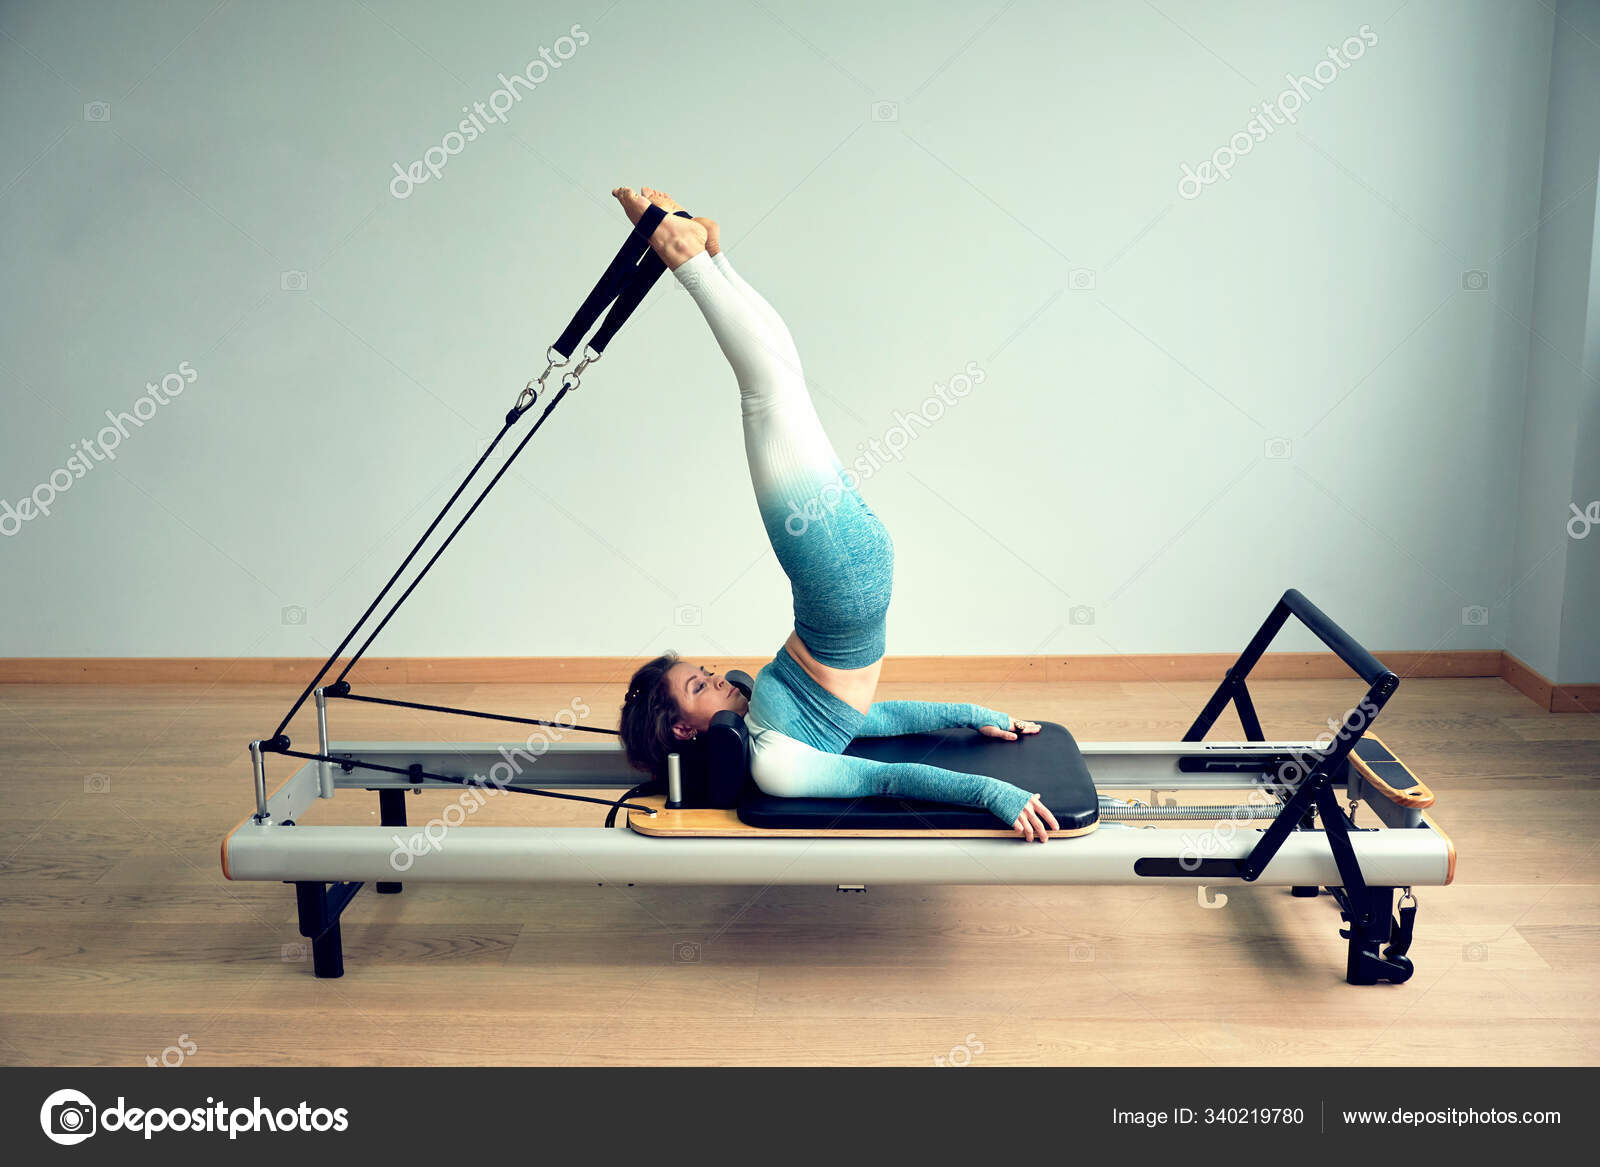 https://st3.depositphotos.com/6840962/34021/i/1600/depositphotos_340219780-stock-photo-young-asian-woman-pilates-stretching.jpg